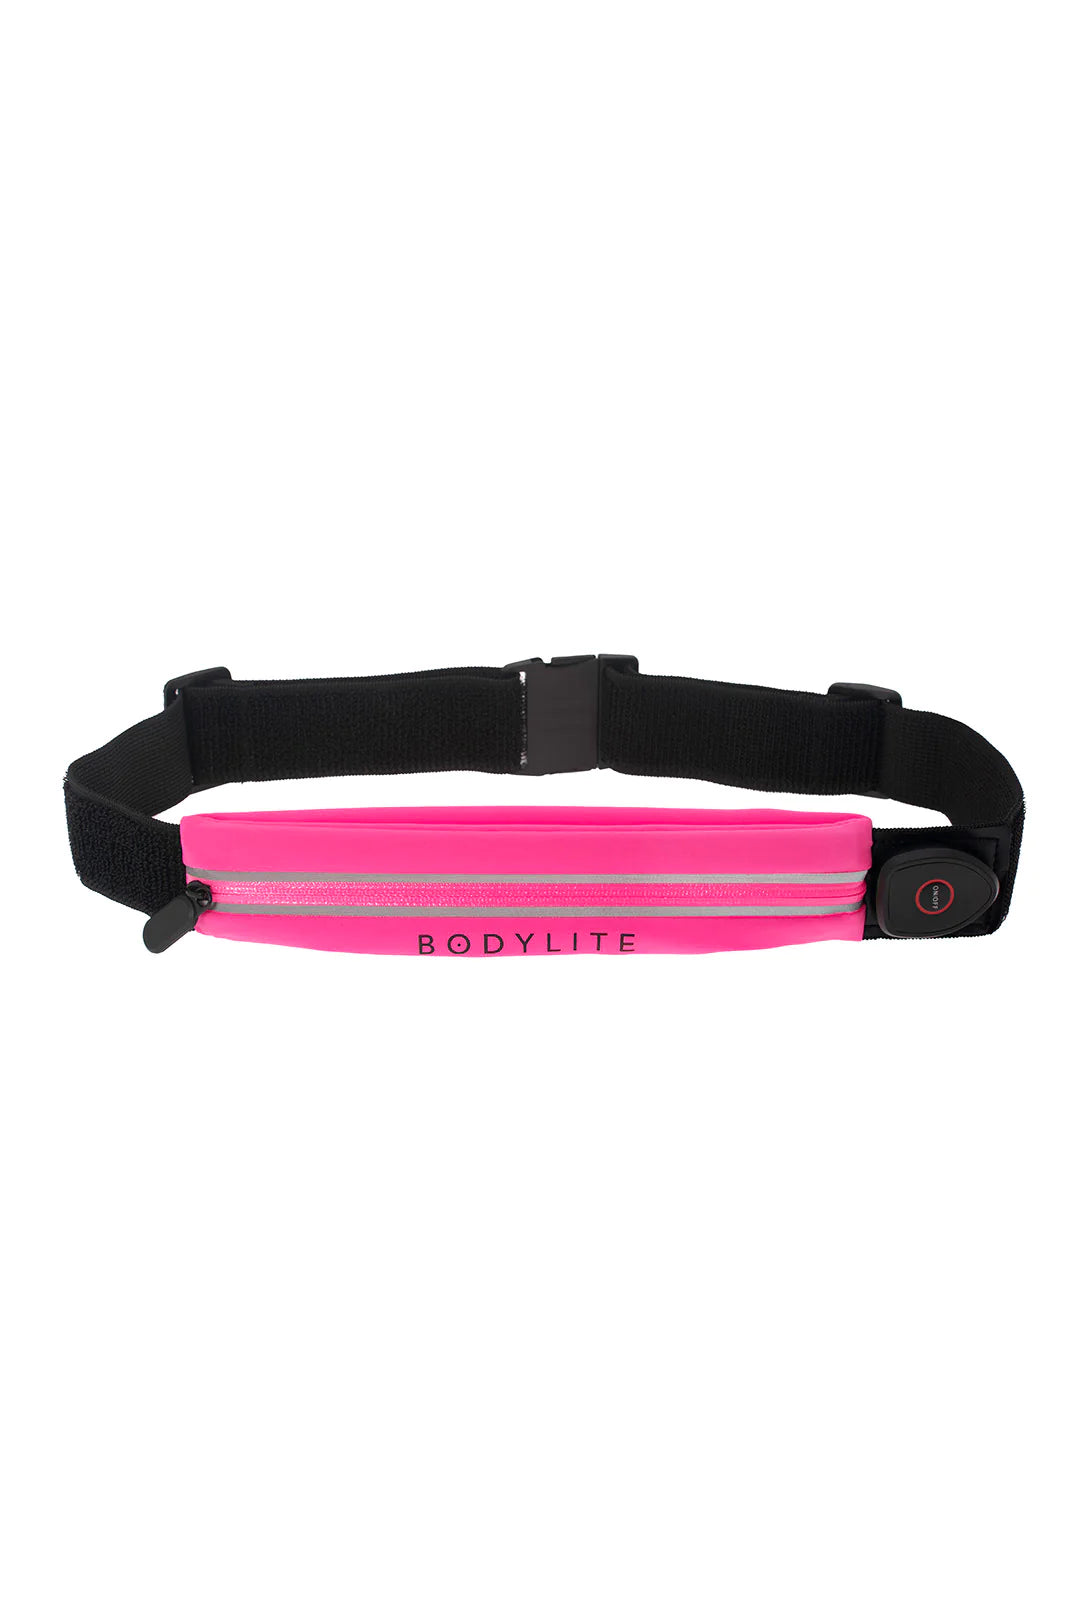 Bodylite - NightVision Belt